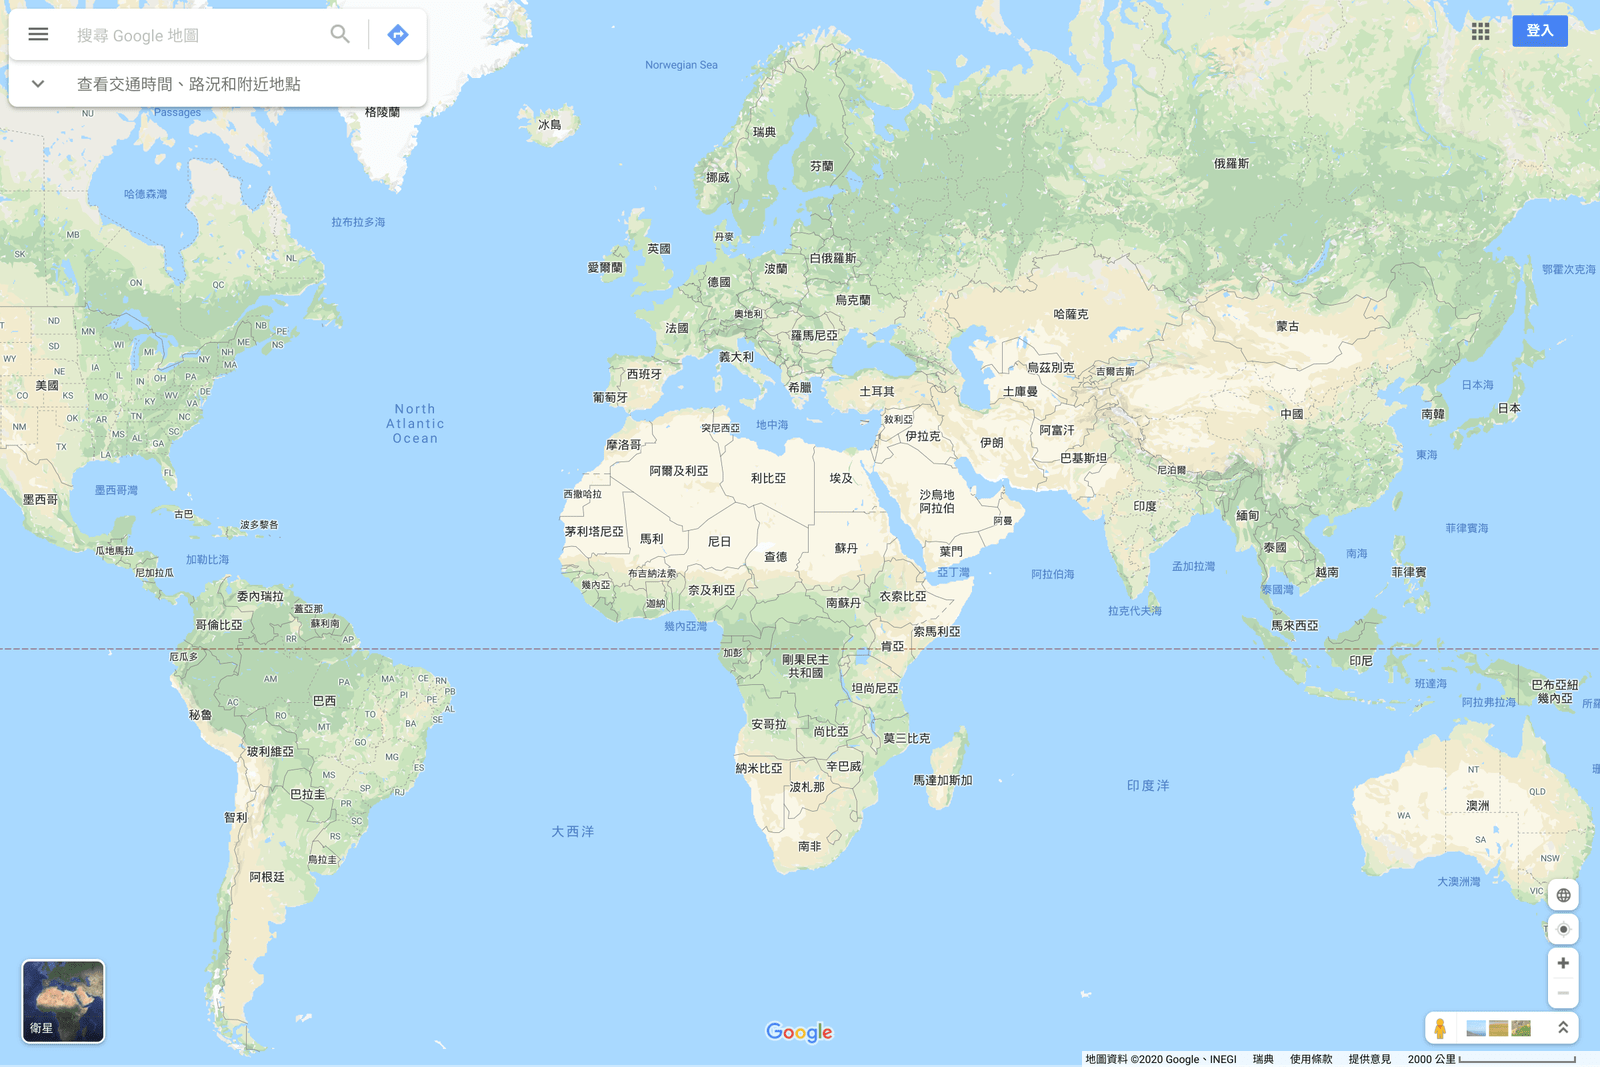 因应用户所在位置 Google 地图将显示不同国界资料